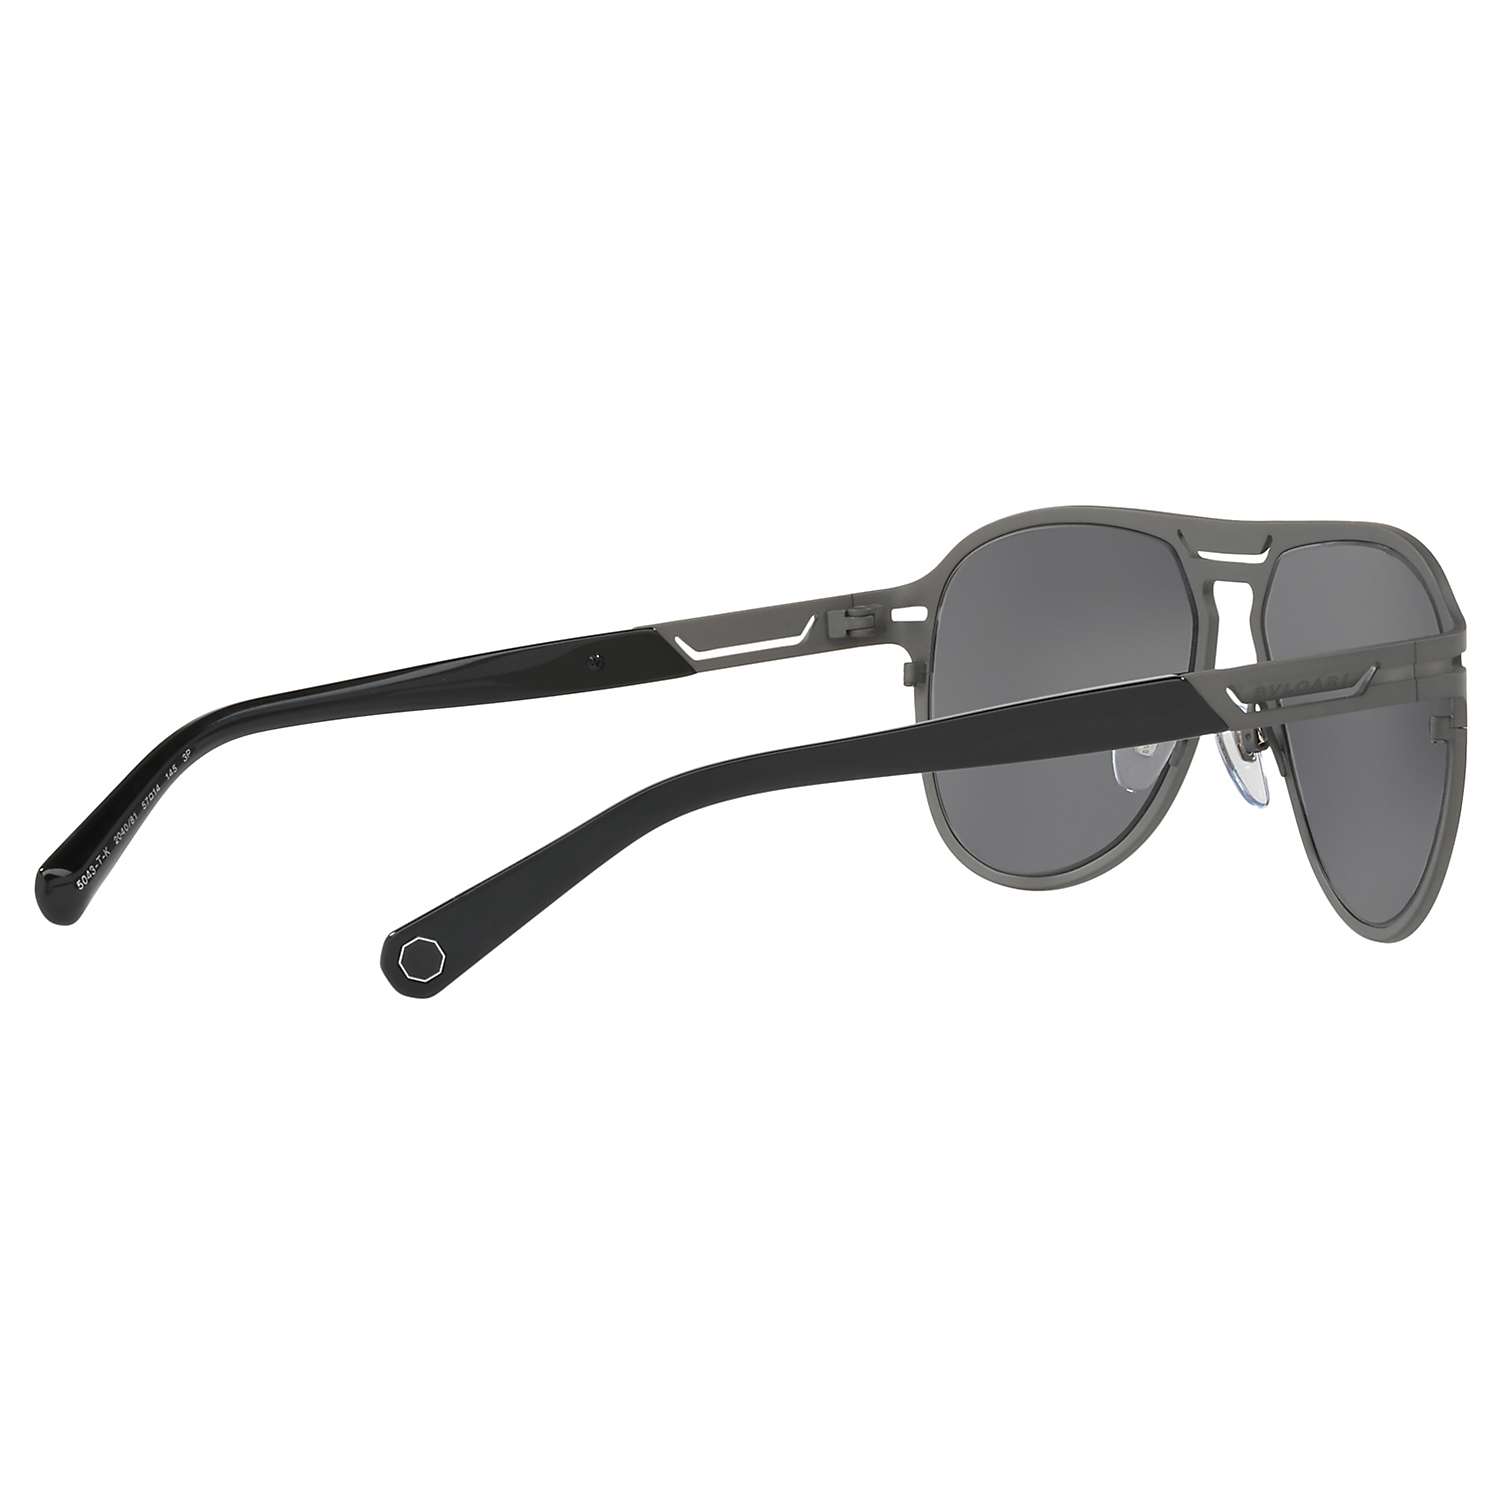 Buy BVLGARI BV5043TK Men's Titanium Polarised Aviator Sunglasses Online at johnlewis.com